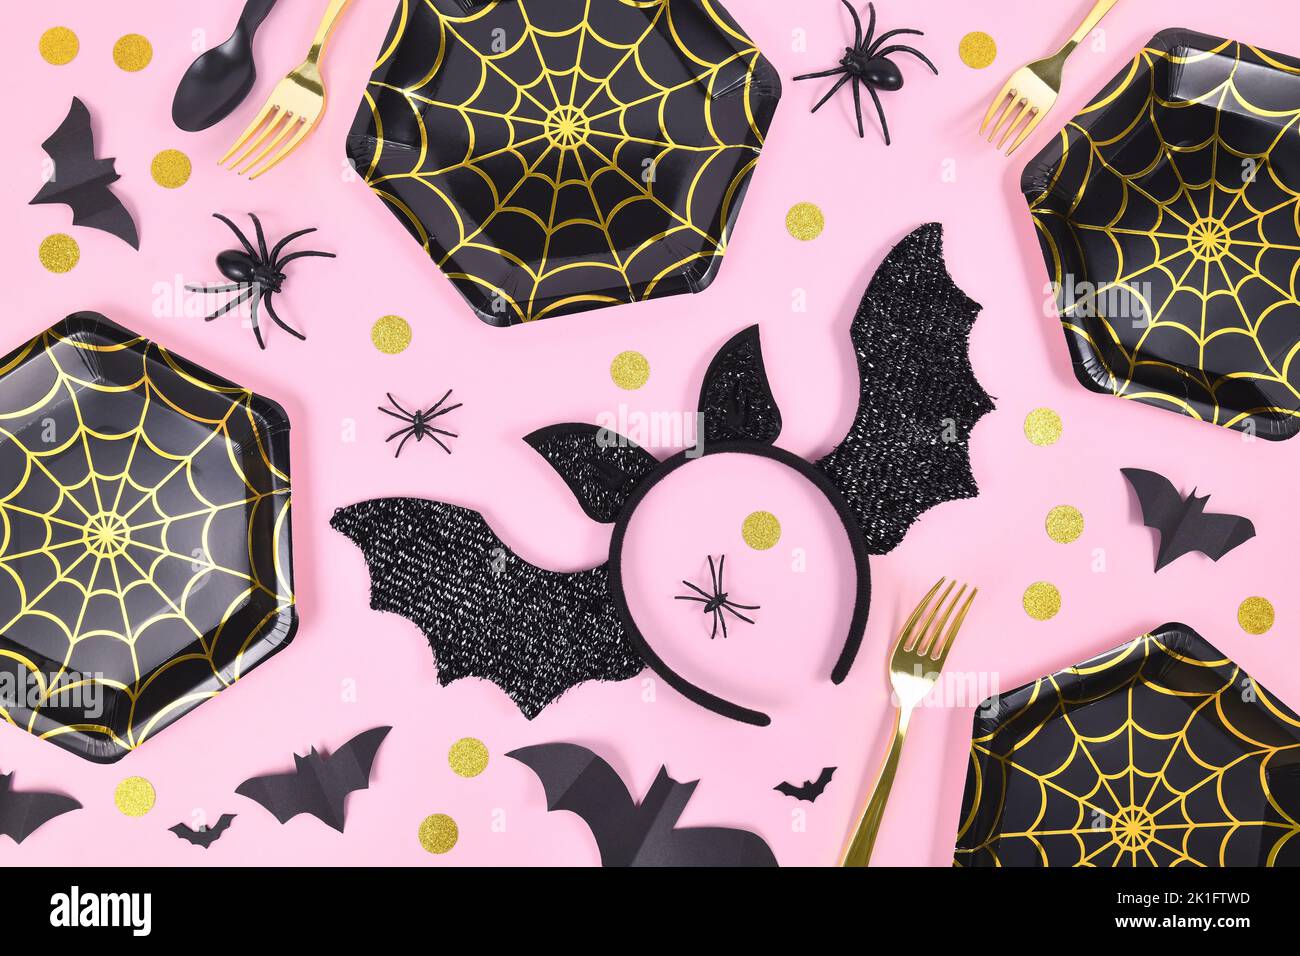 Halloween Party flach legen mit schwarzen und goldenen Spinnennetz Platten, Spinnen und Konfetti auf rosa Hintergrund Stockfoto